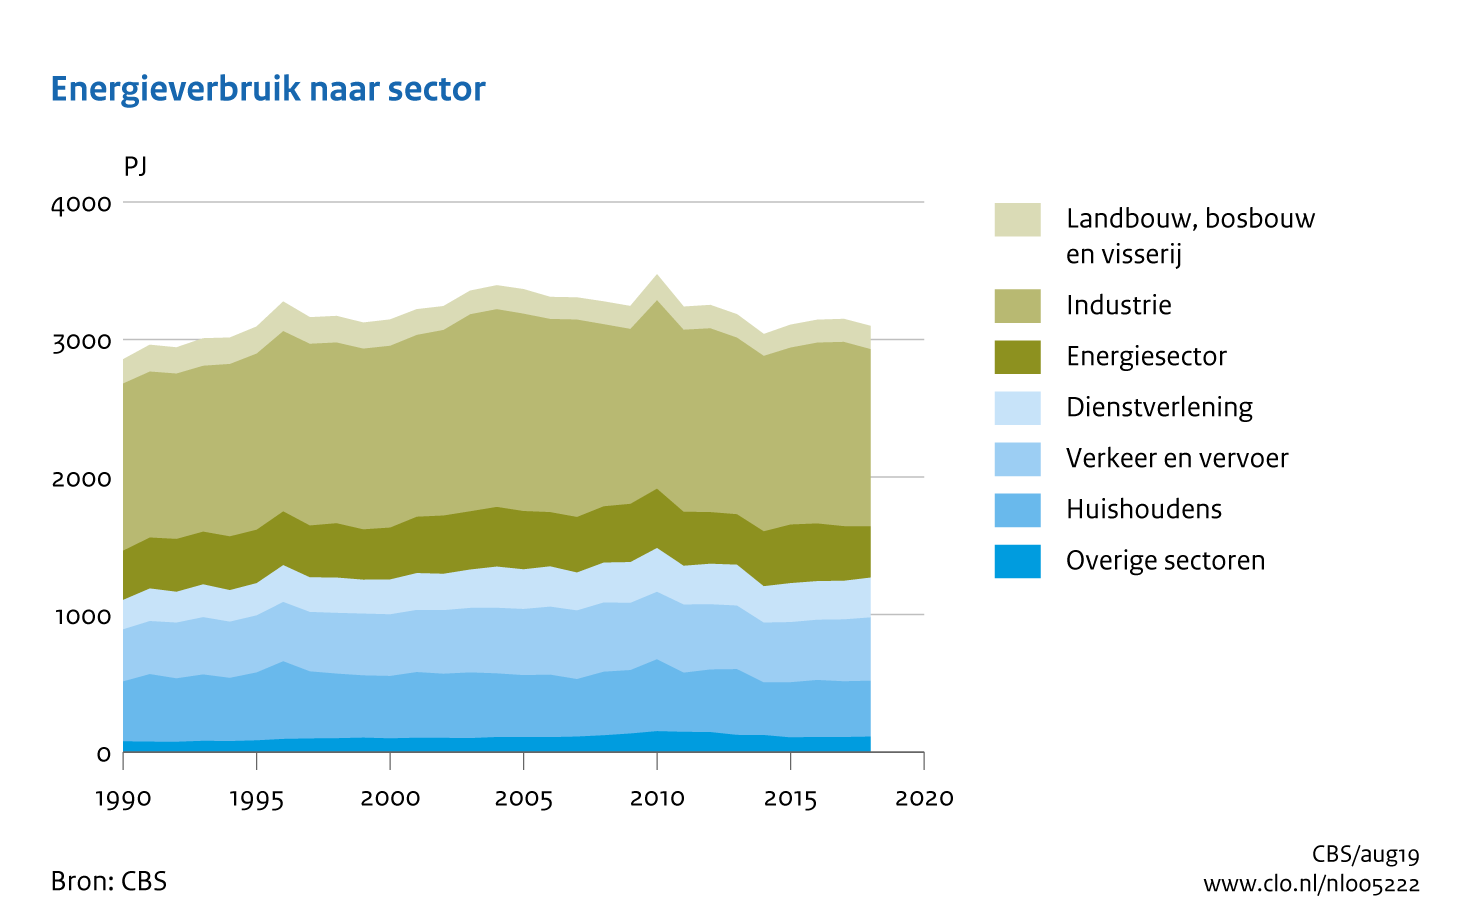 Figuur Energieverbruik per sector 1990-2018. In de rest van de tekst wordt deze figuur uitgebreider uitgelegd.